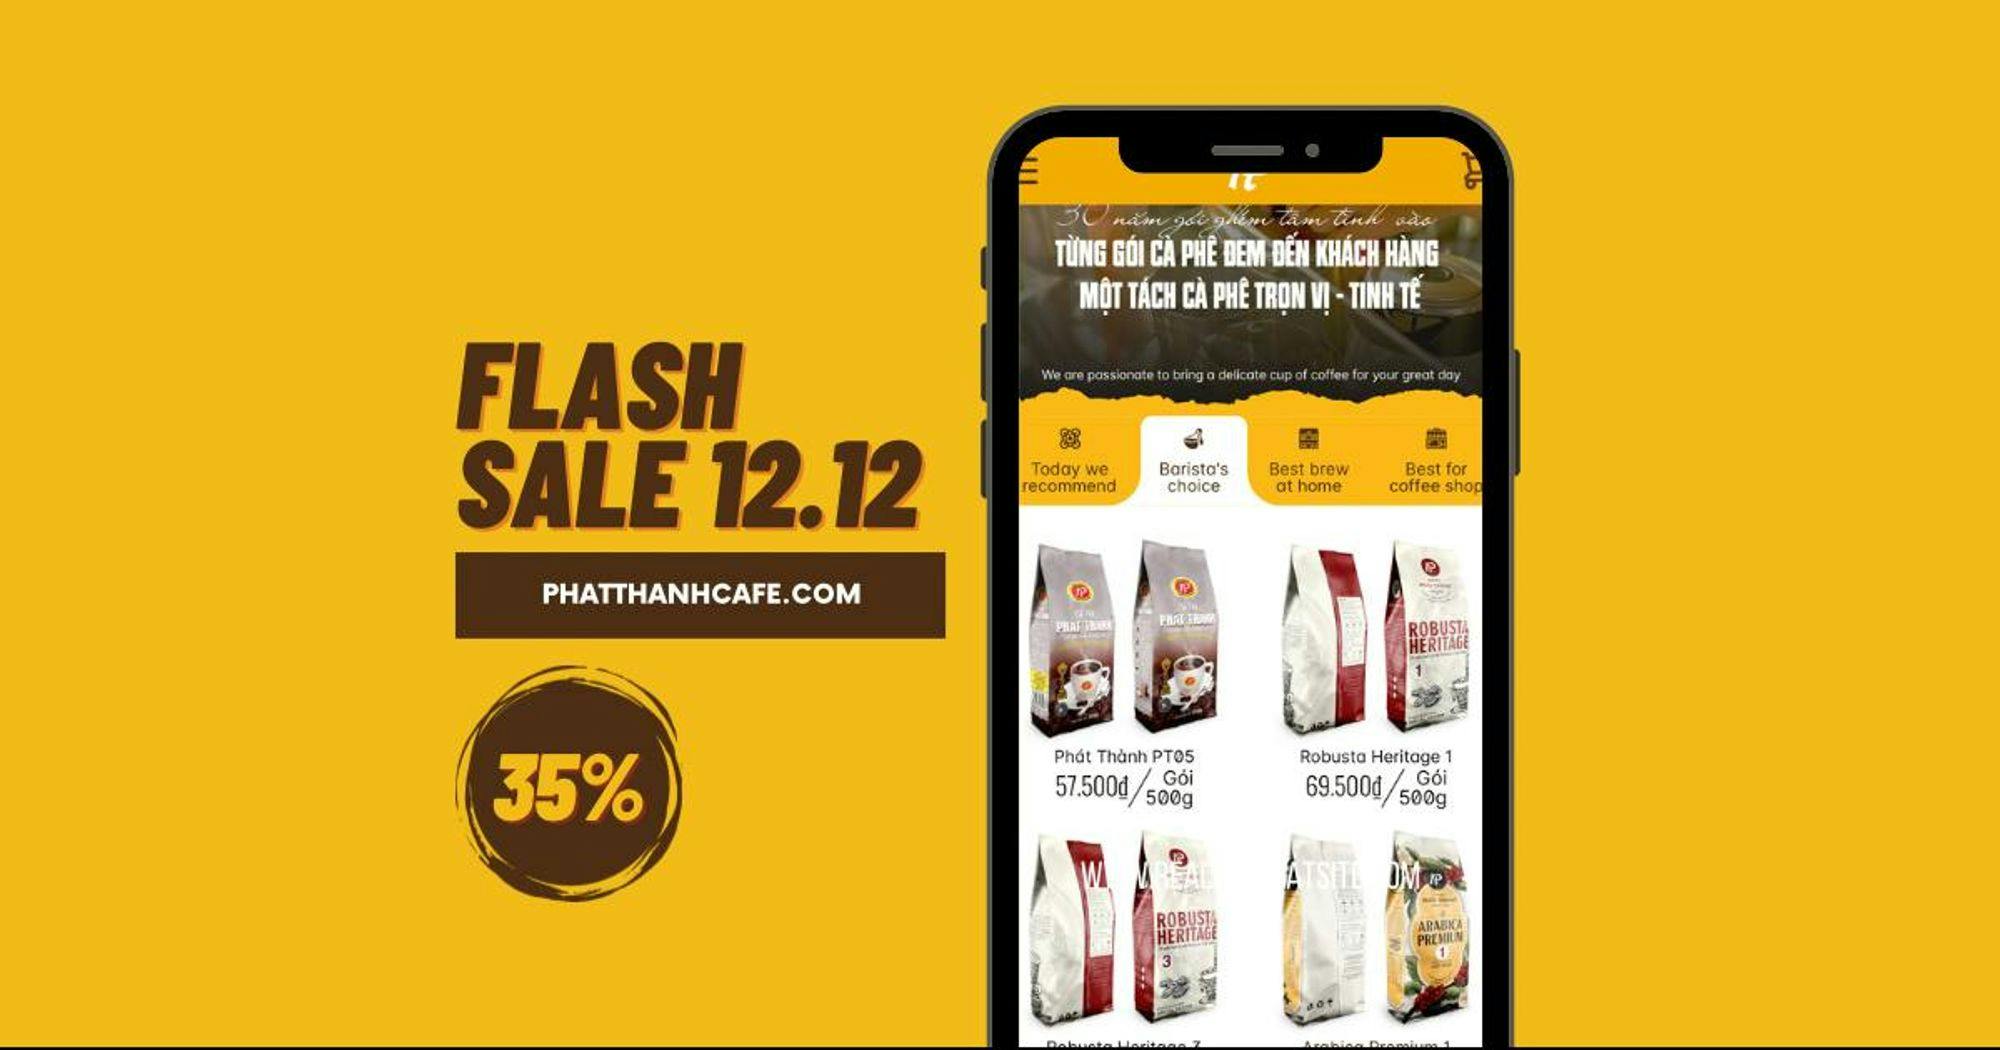 Duy nhất 01 ngày | Flashsale 12.12 - Giảm đến 35%